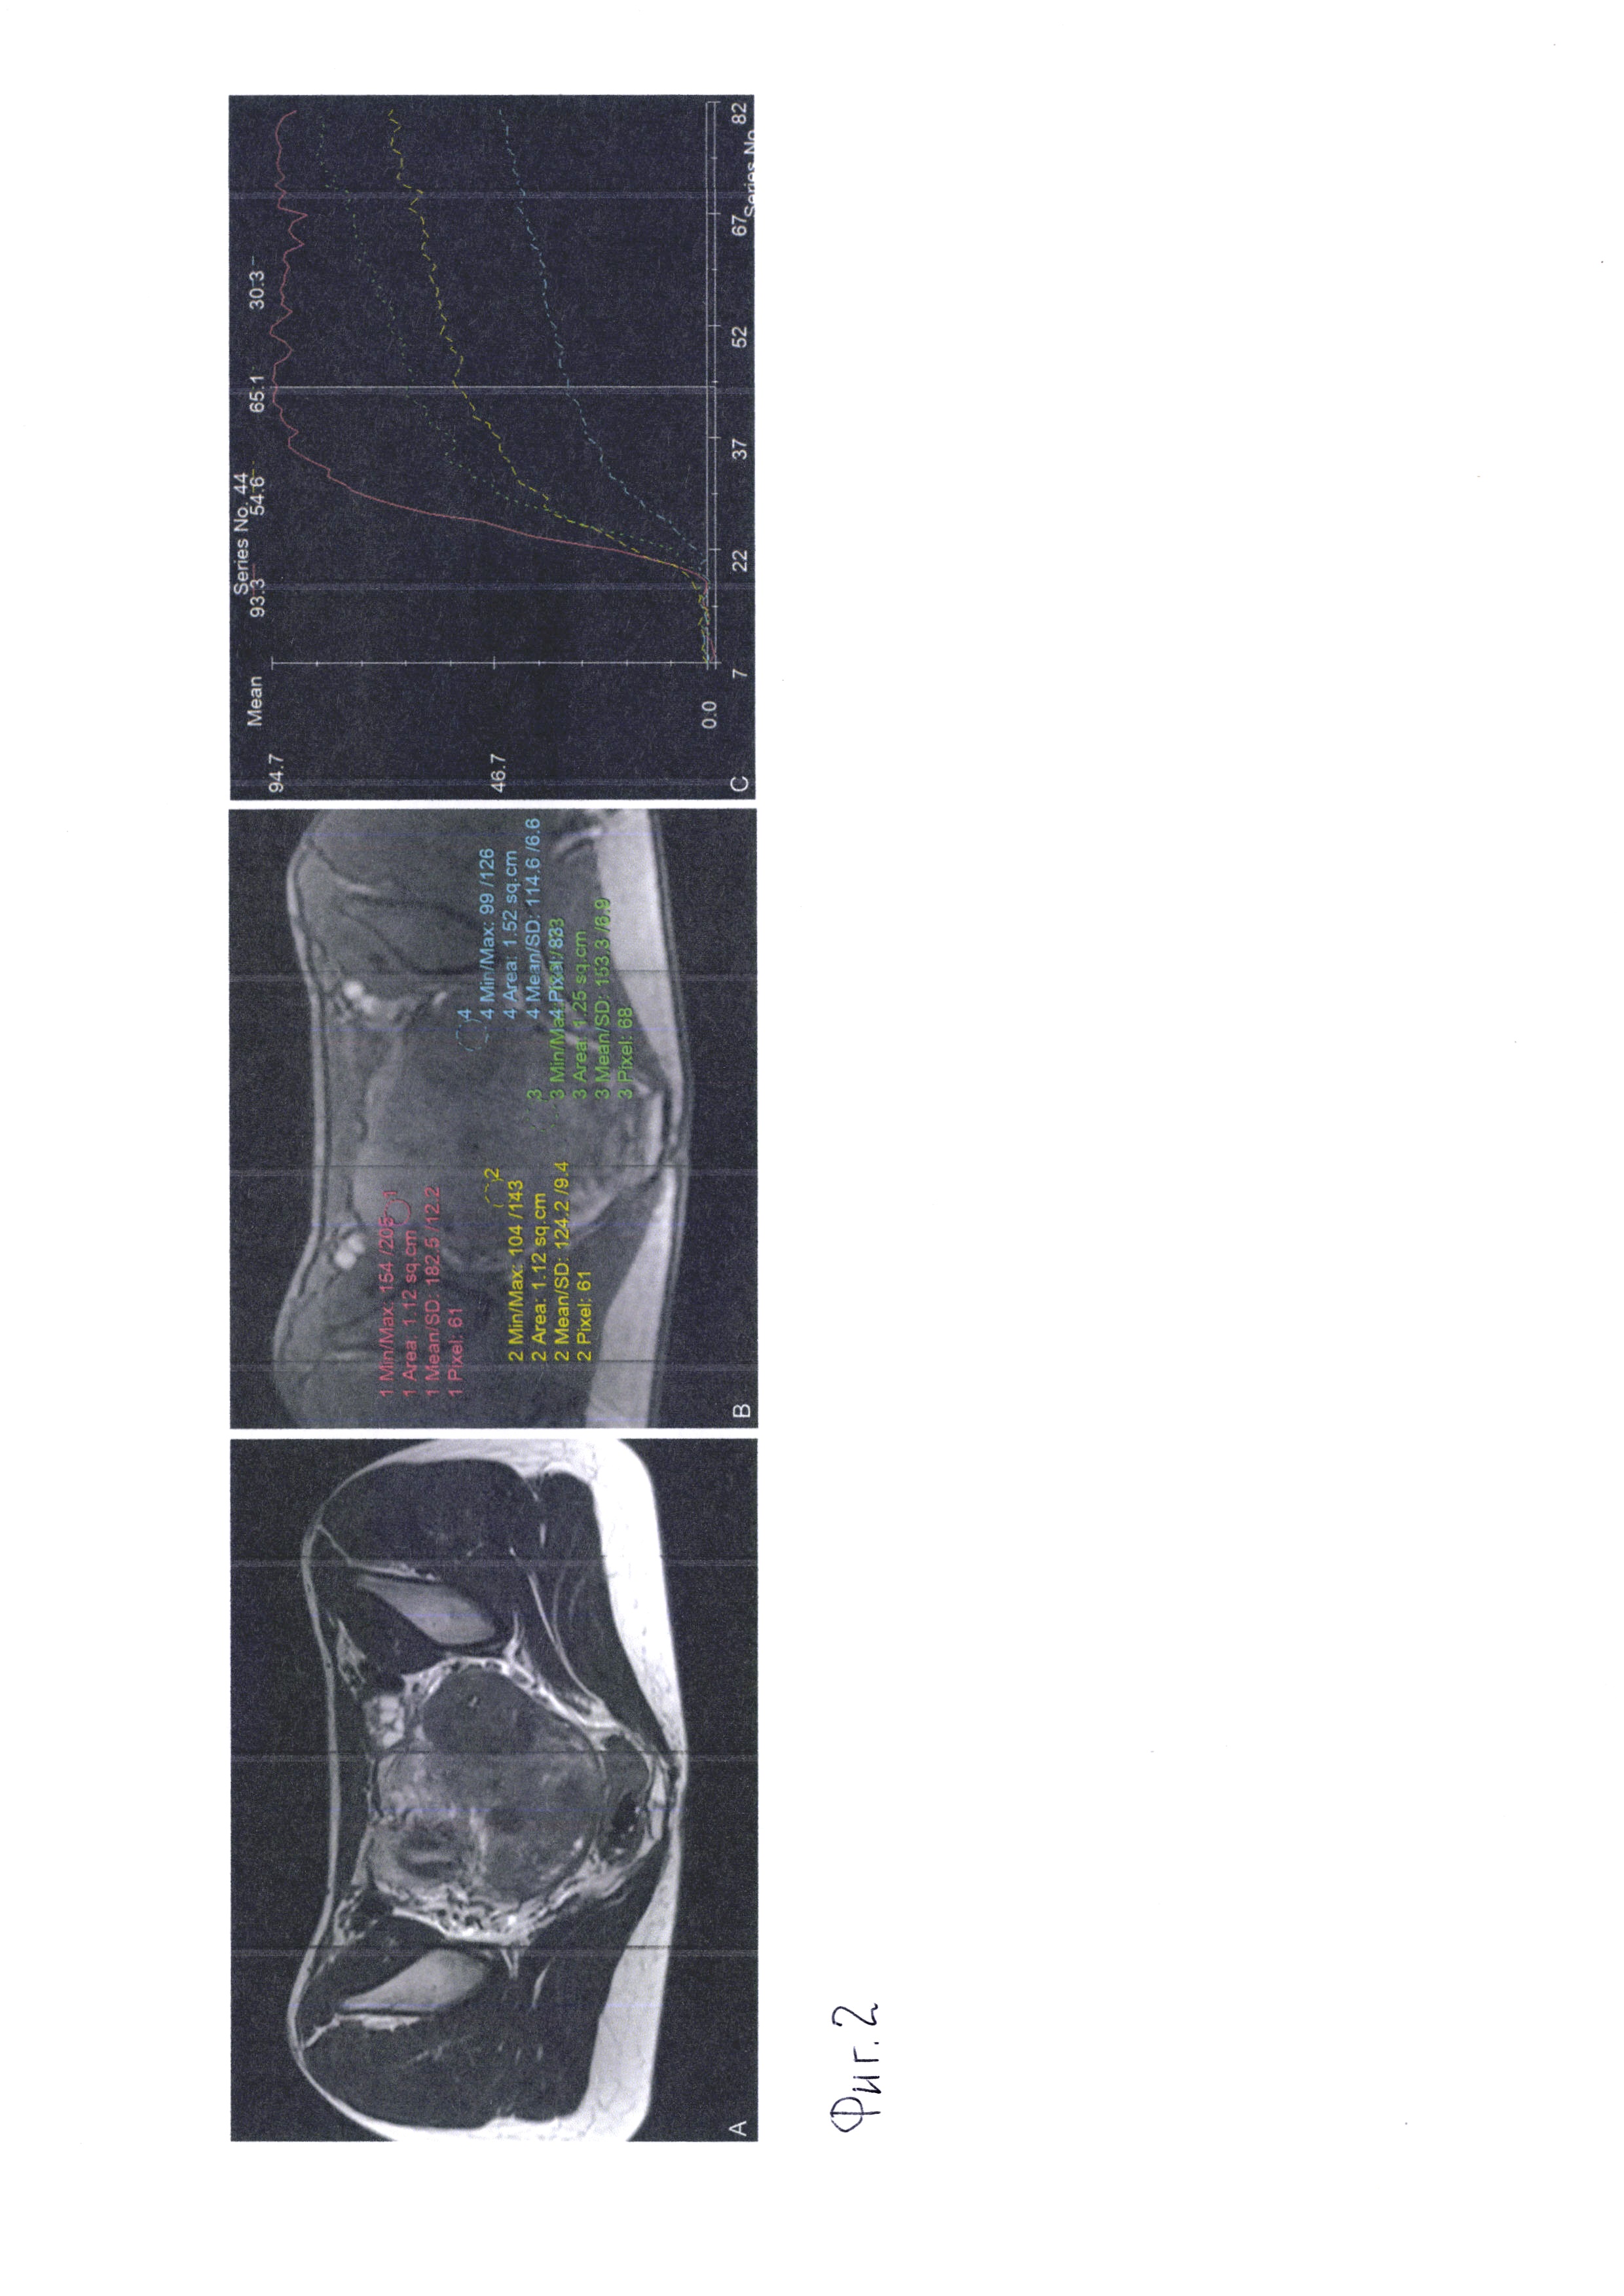 Метод динамического сканирования при мультипараметрической магнитно-резонансной томографии с использованием парамагнитного контрастного агента для определения параметров кровотока в ткани матки при миоме и аденомиозе